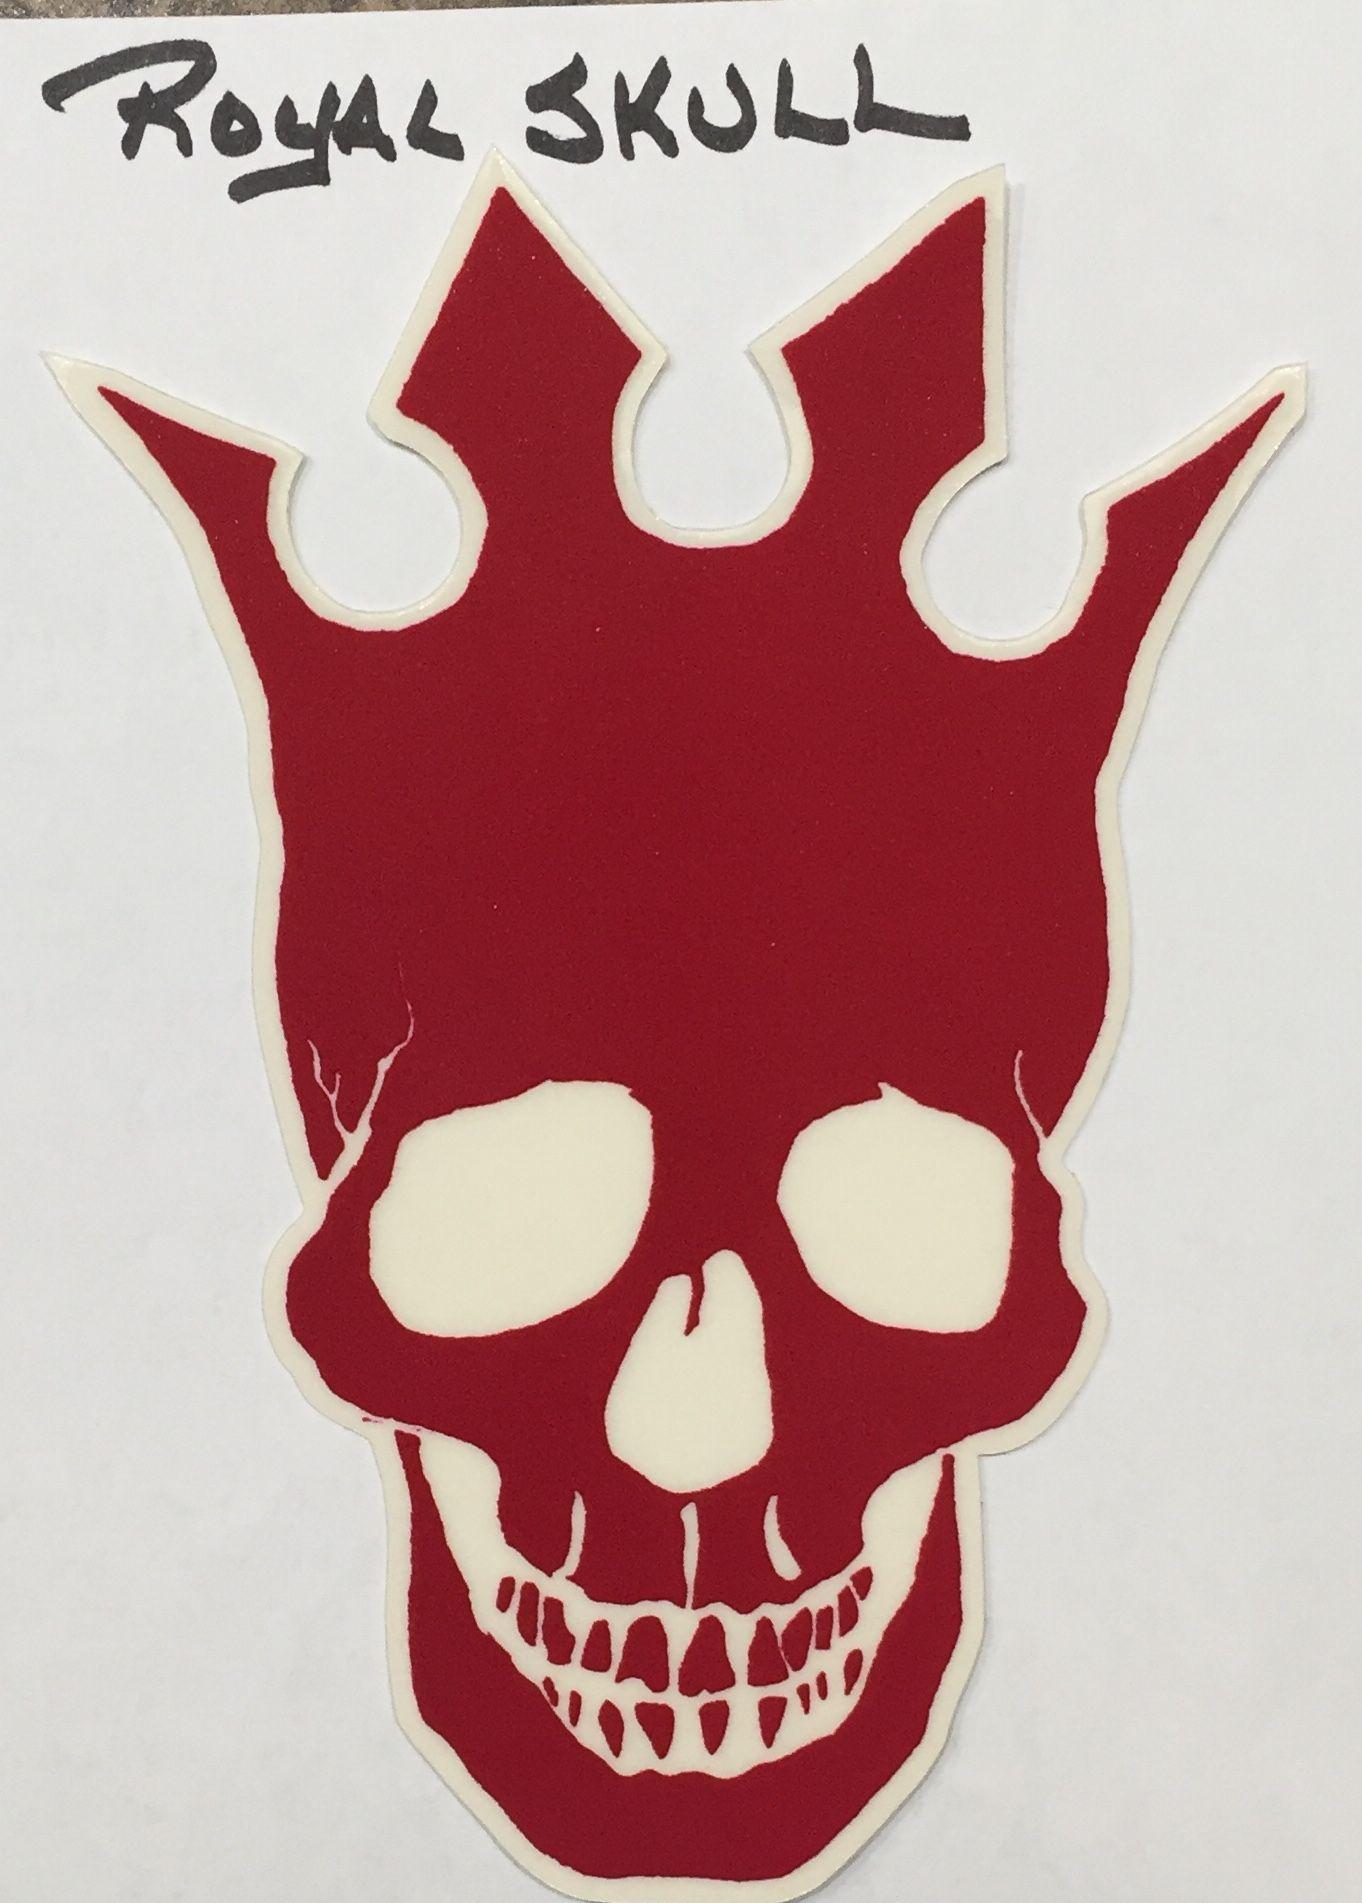 Pearl Jam Skull Logo - SOLD! Royal Skull Sticker